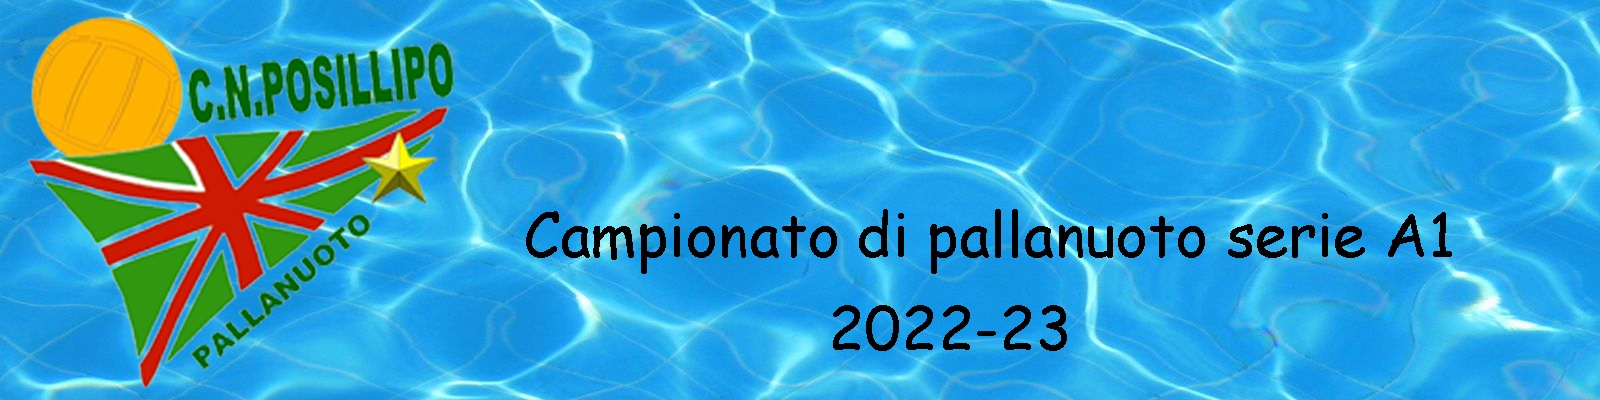 Posillipo 2022-23